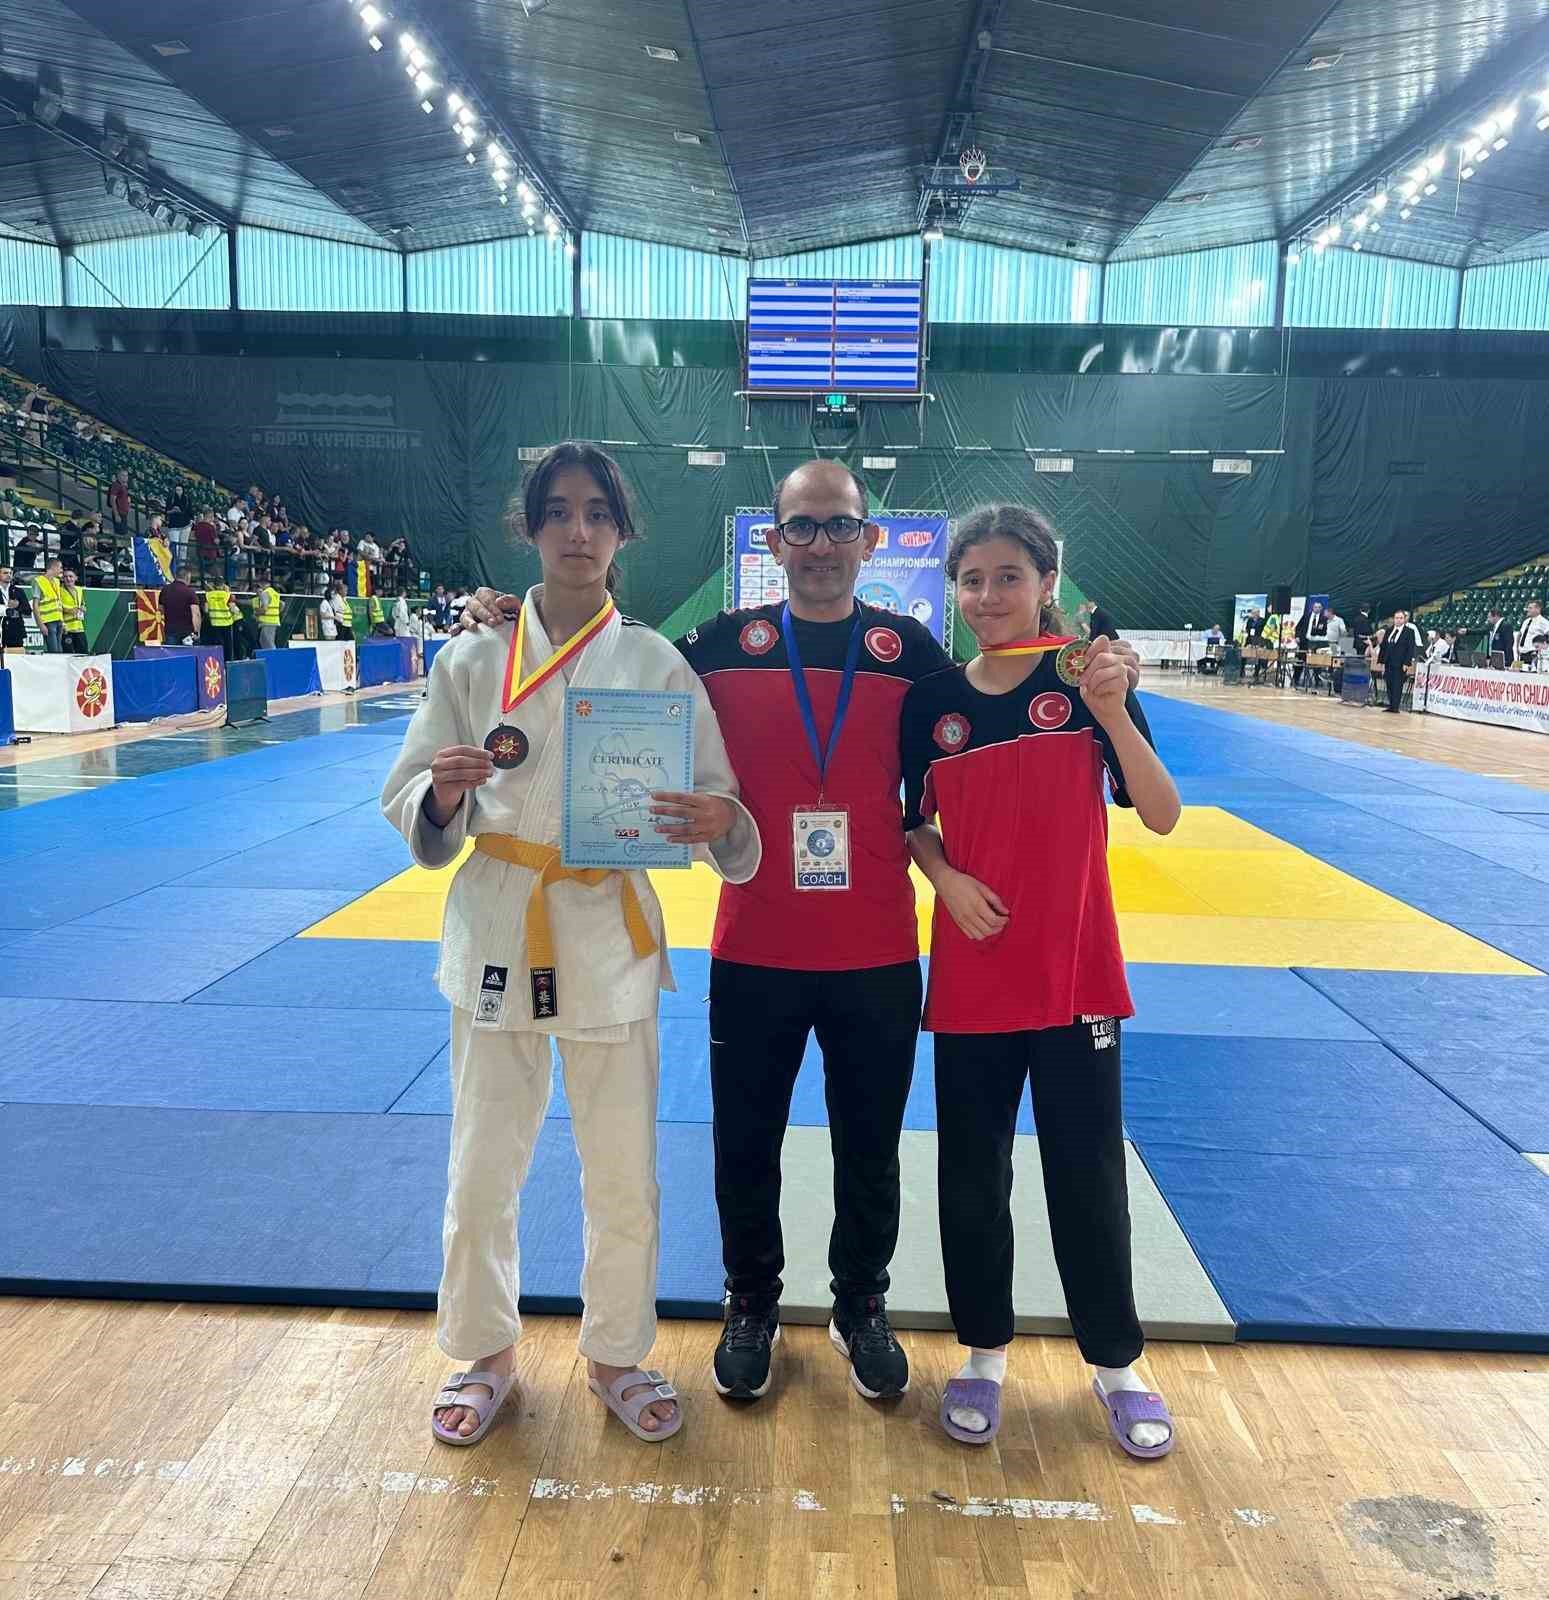 Vanlı judocular Makedonya’dan şampiyonlukla döndüler
